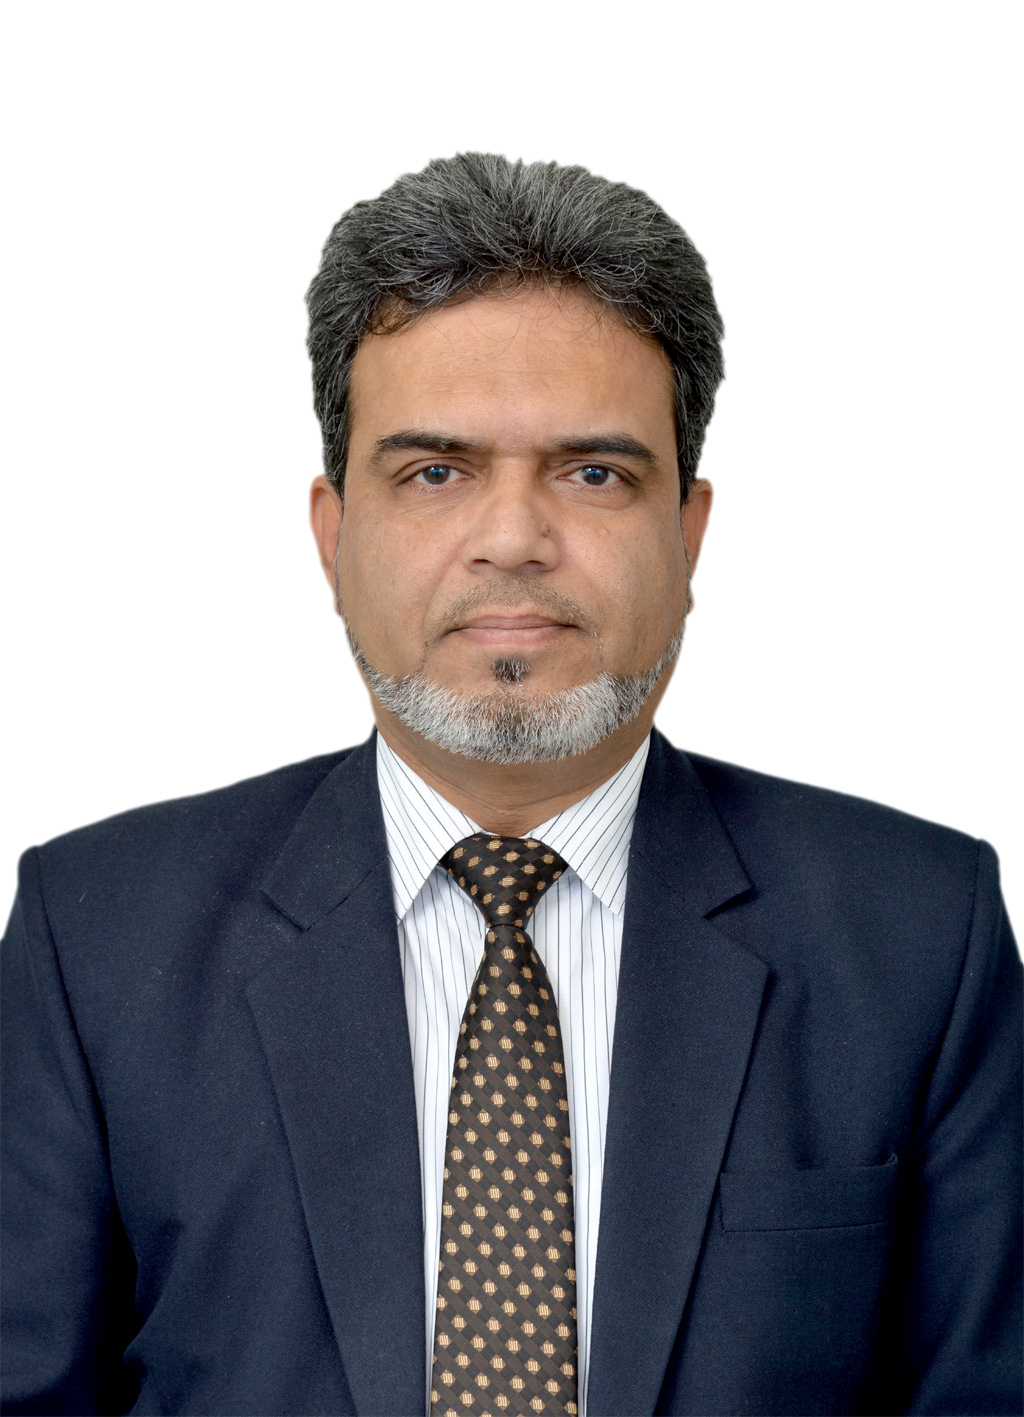 Dr. Mohammed Mukhtar Khan